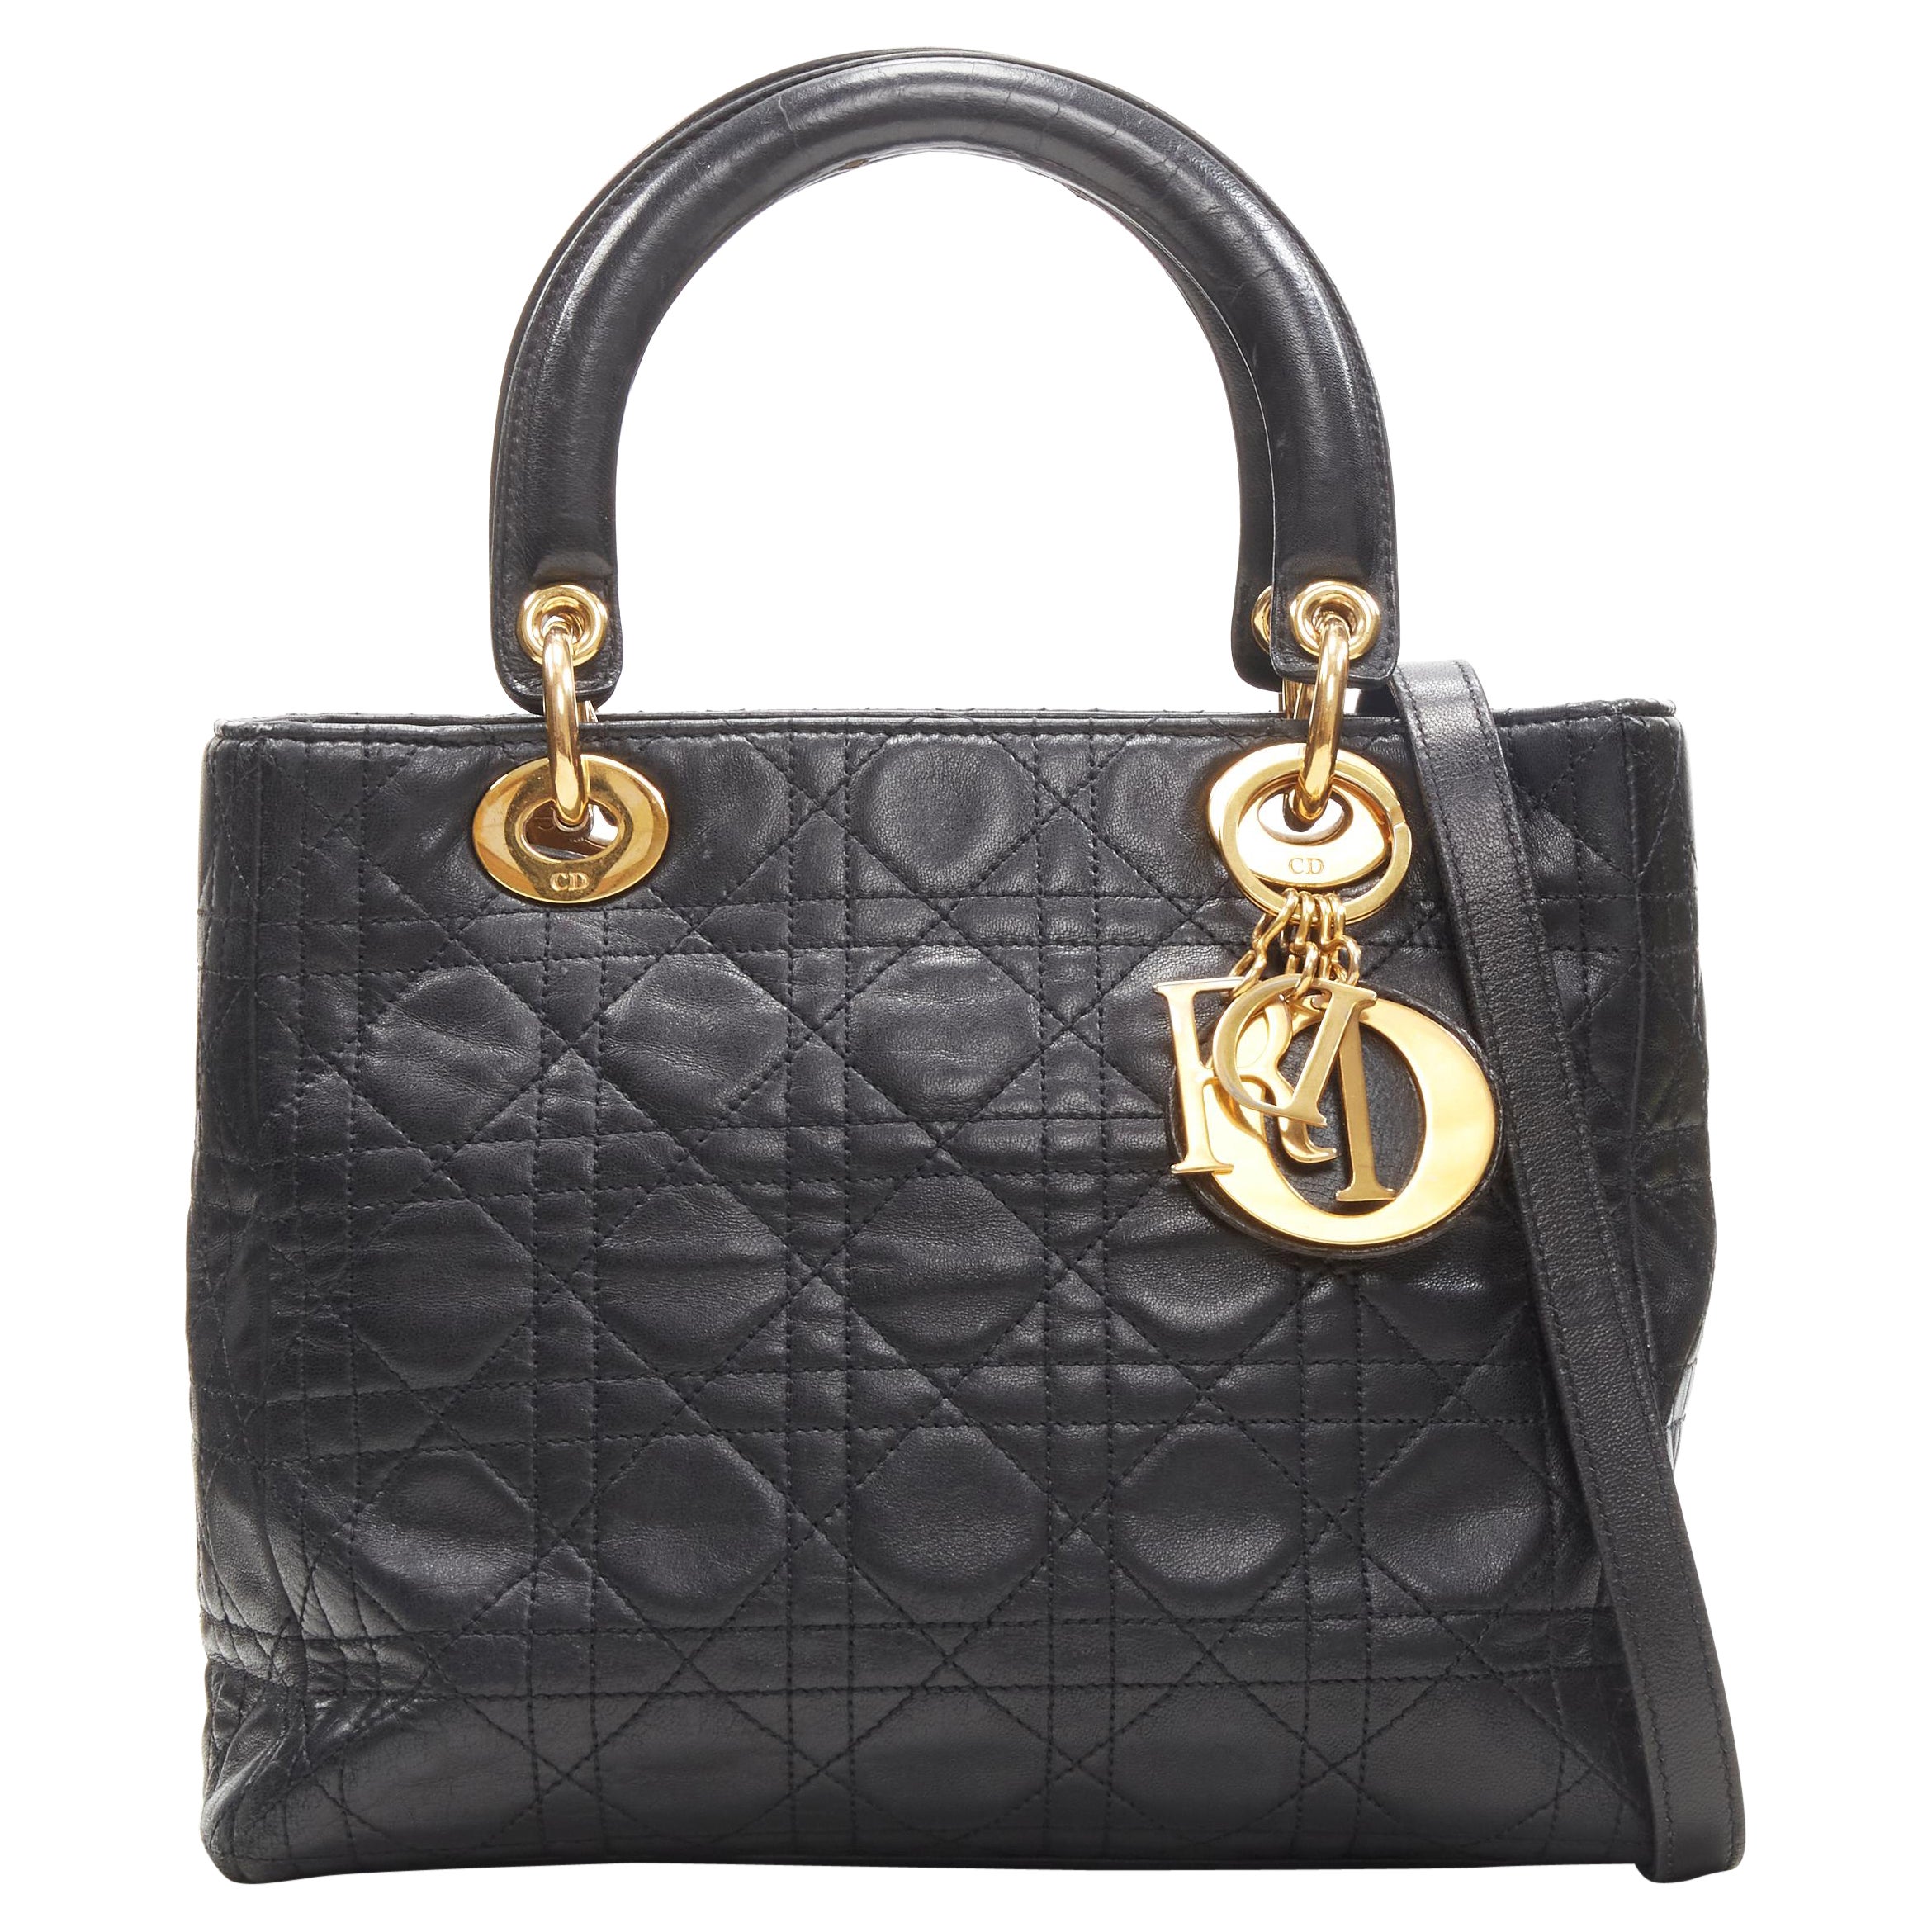 CHRISTIAN DIOR Vintage Lady Dior black cannage gold charm crossbody satchel bag